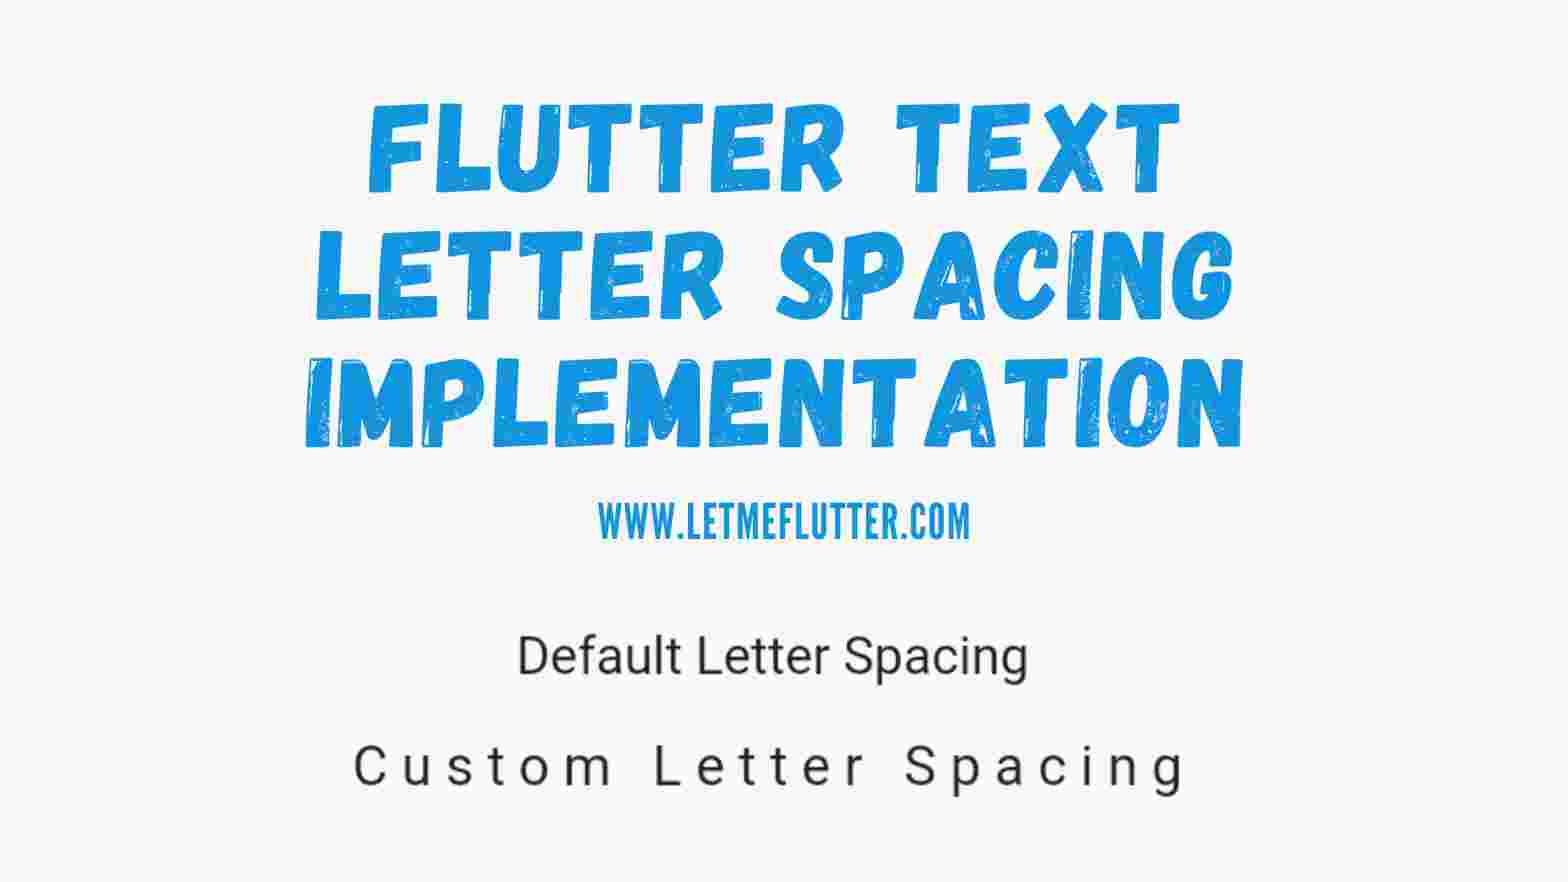 Flutter text letter spacing